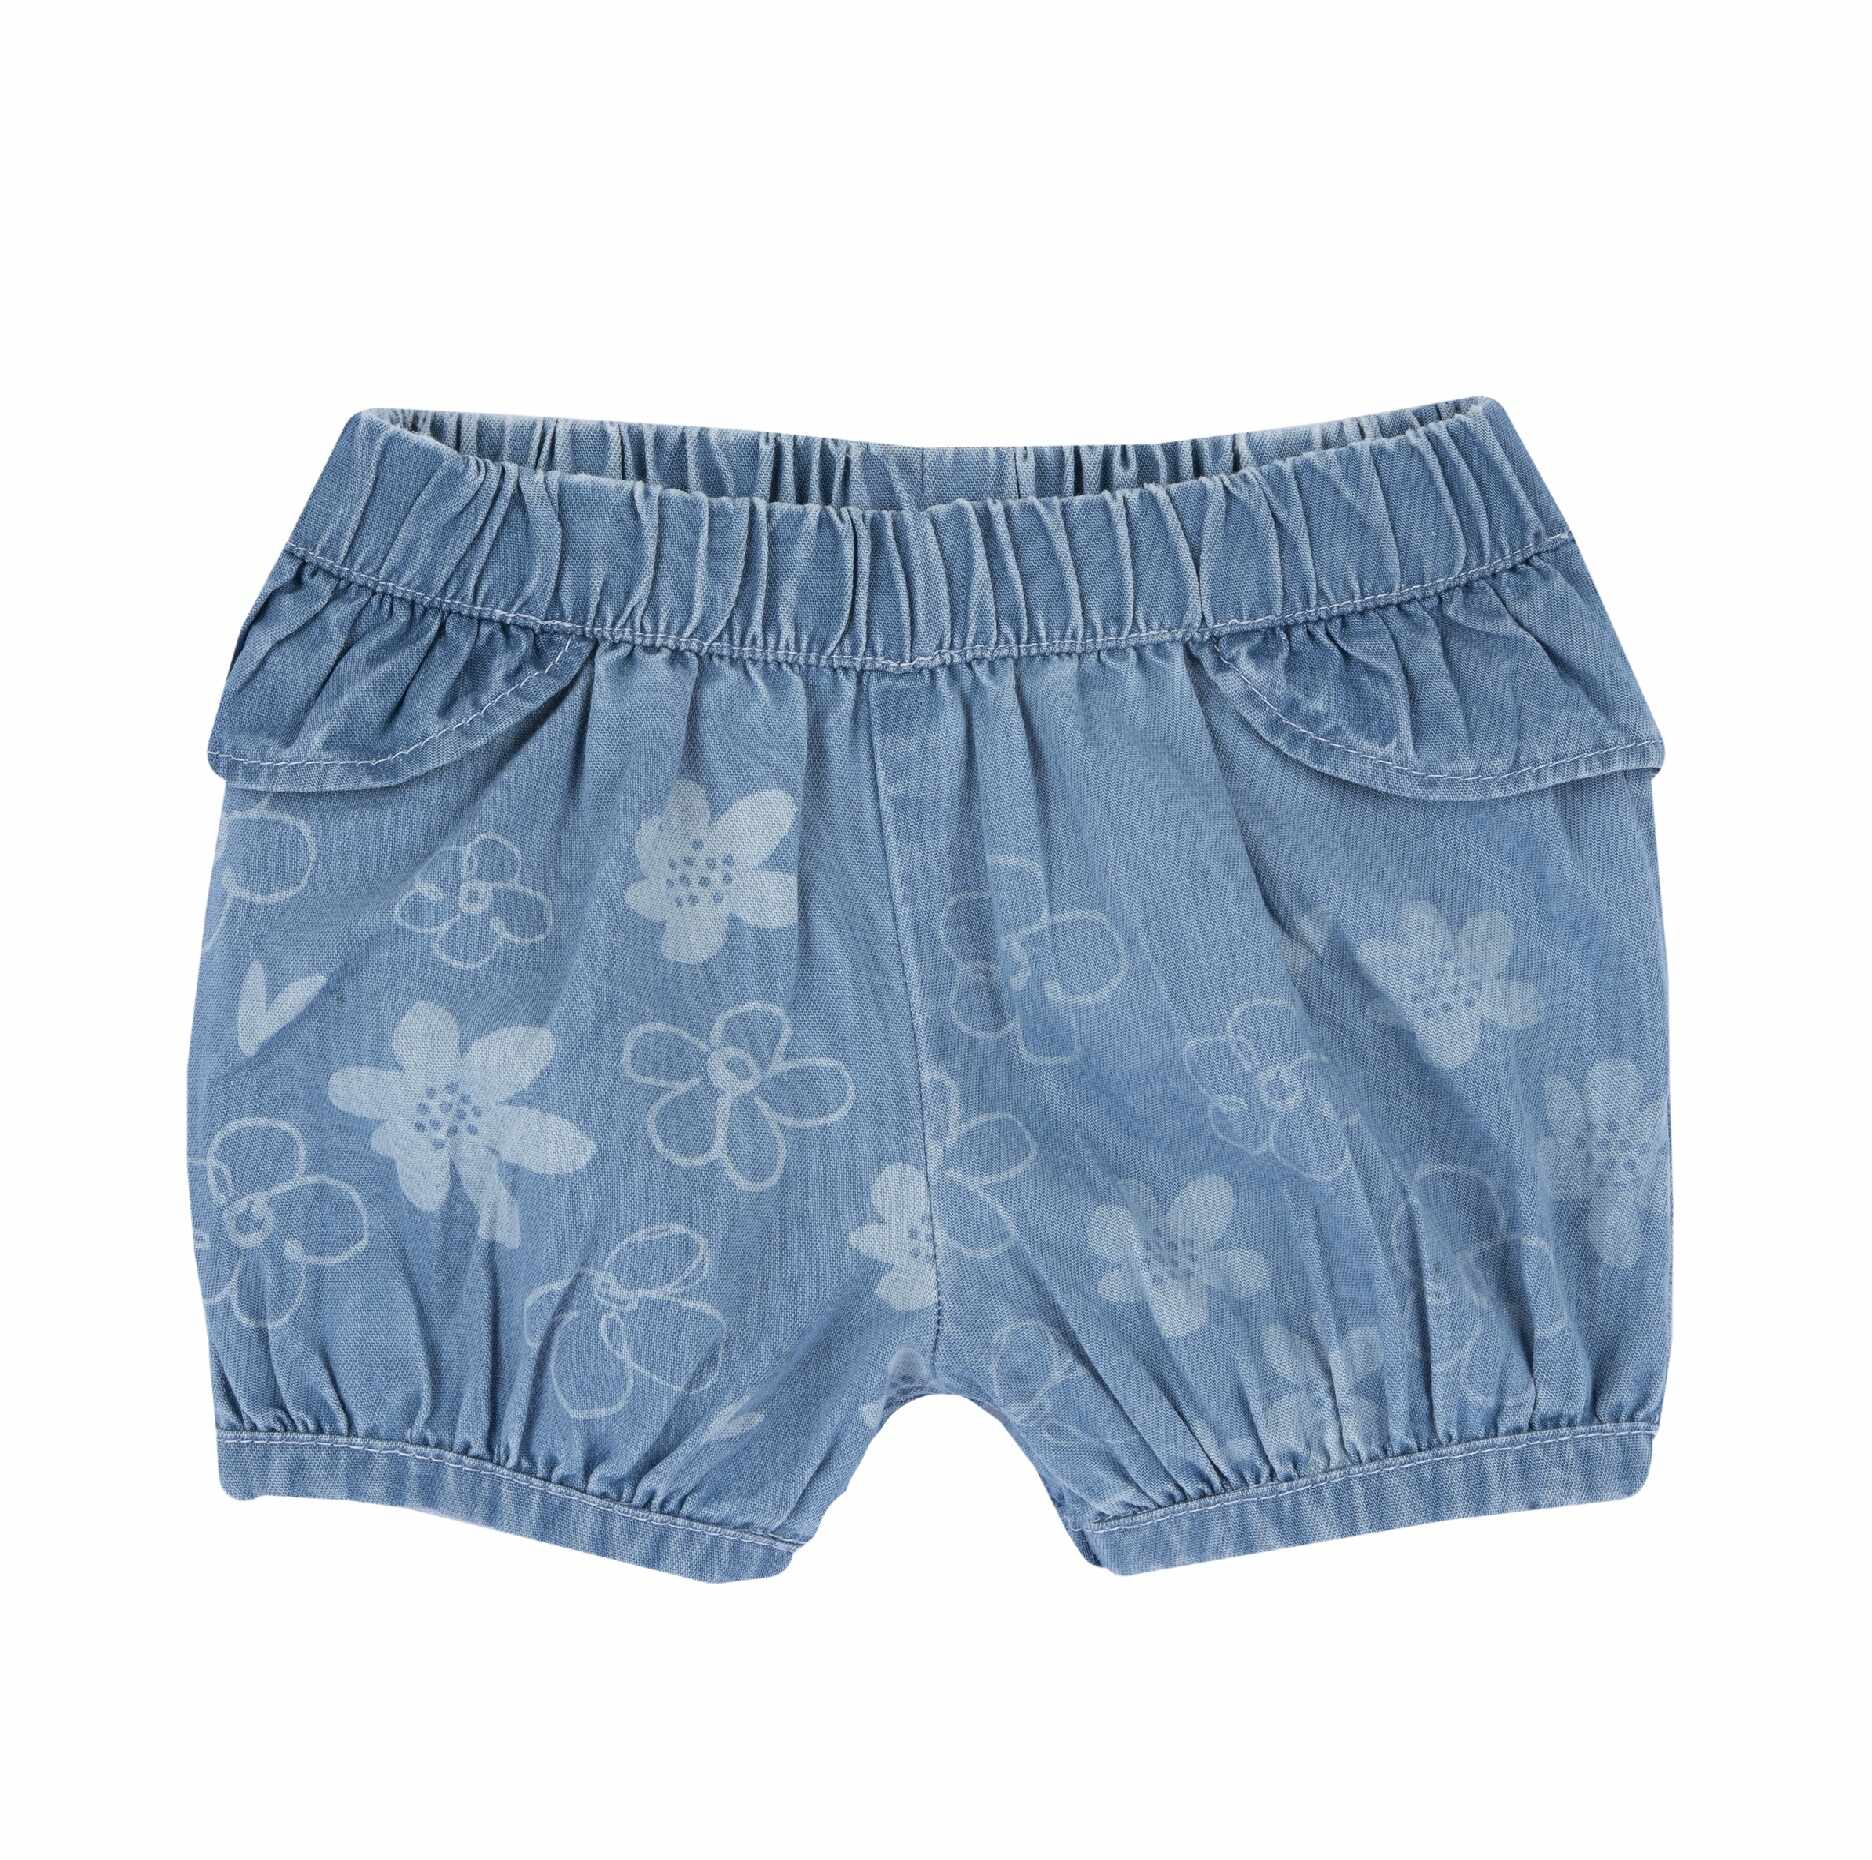 Pantaloni copii Chicco denim, Albastru, 00584-64MFCO